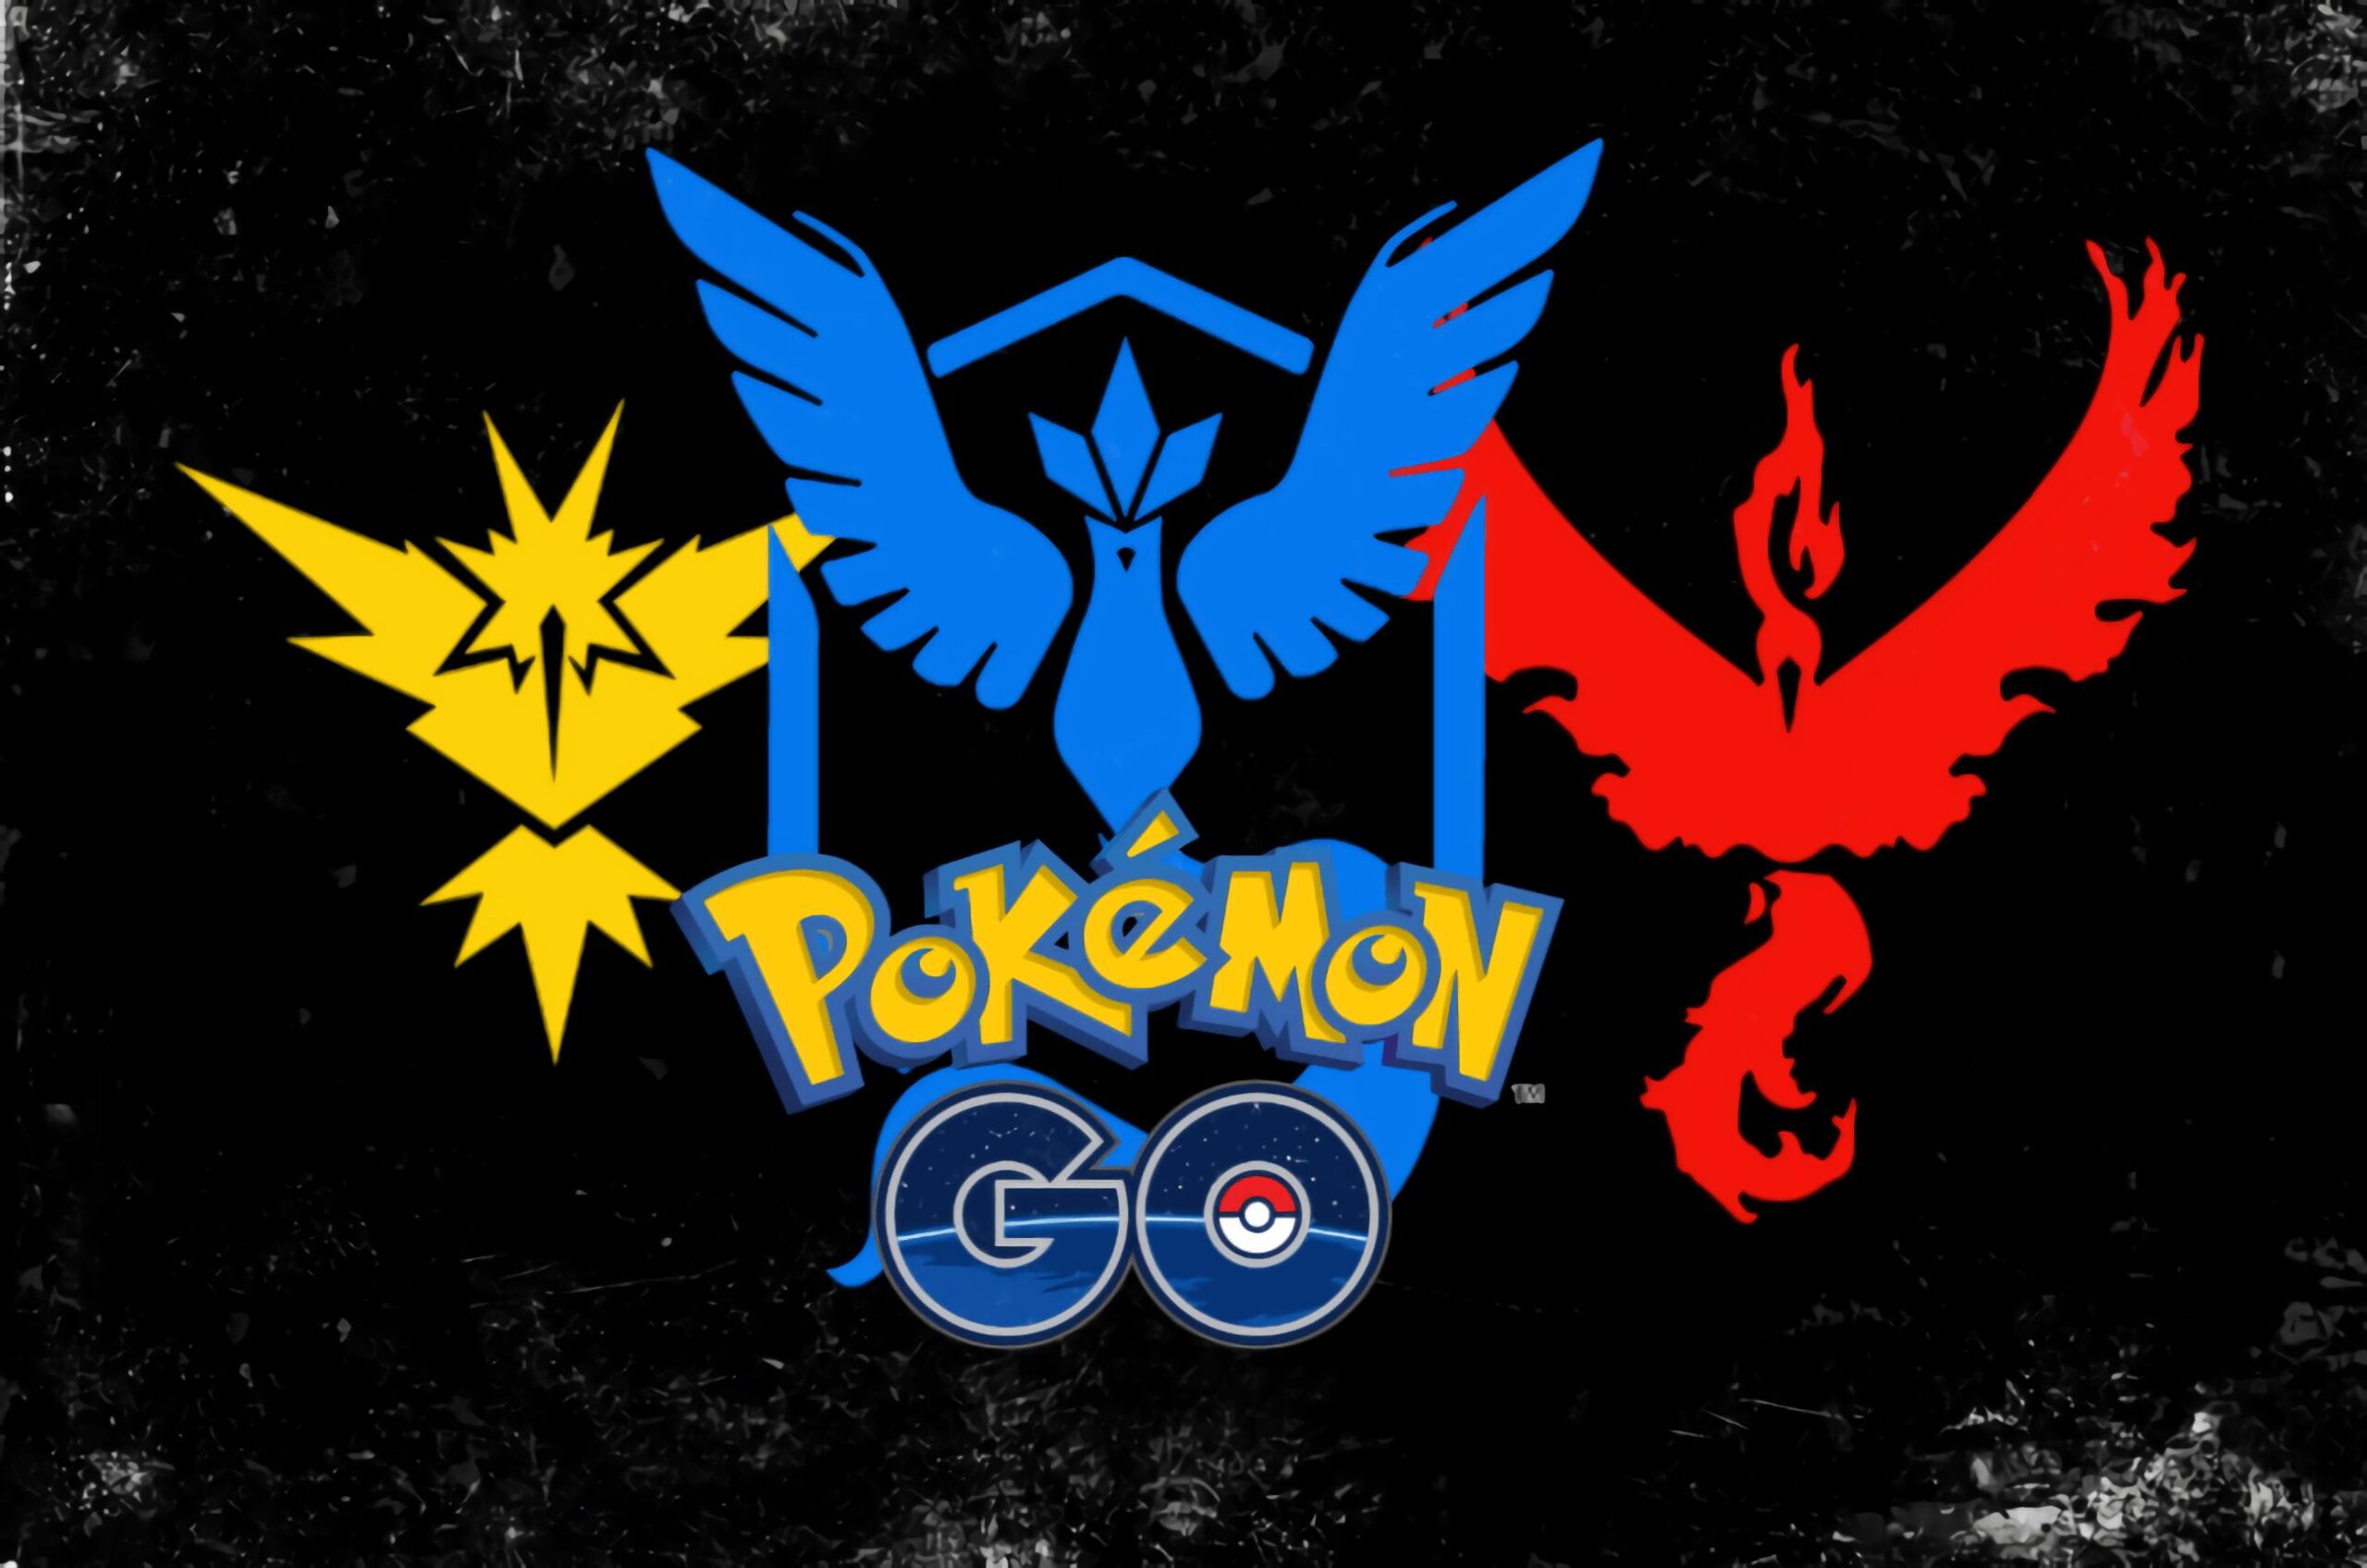 Pokemon GO Wallpaper For Pc, Pokémon Go, Game